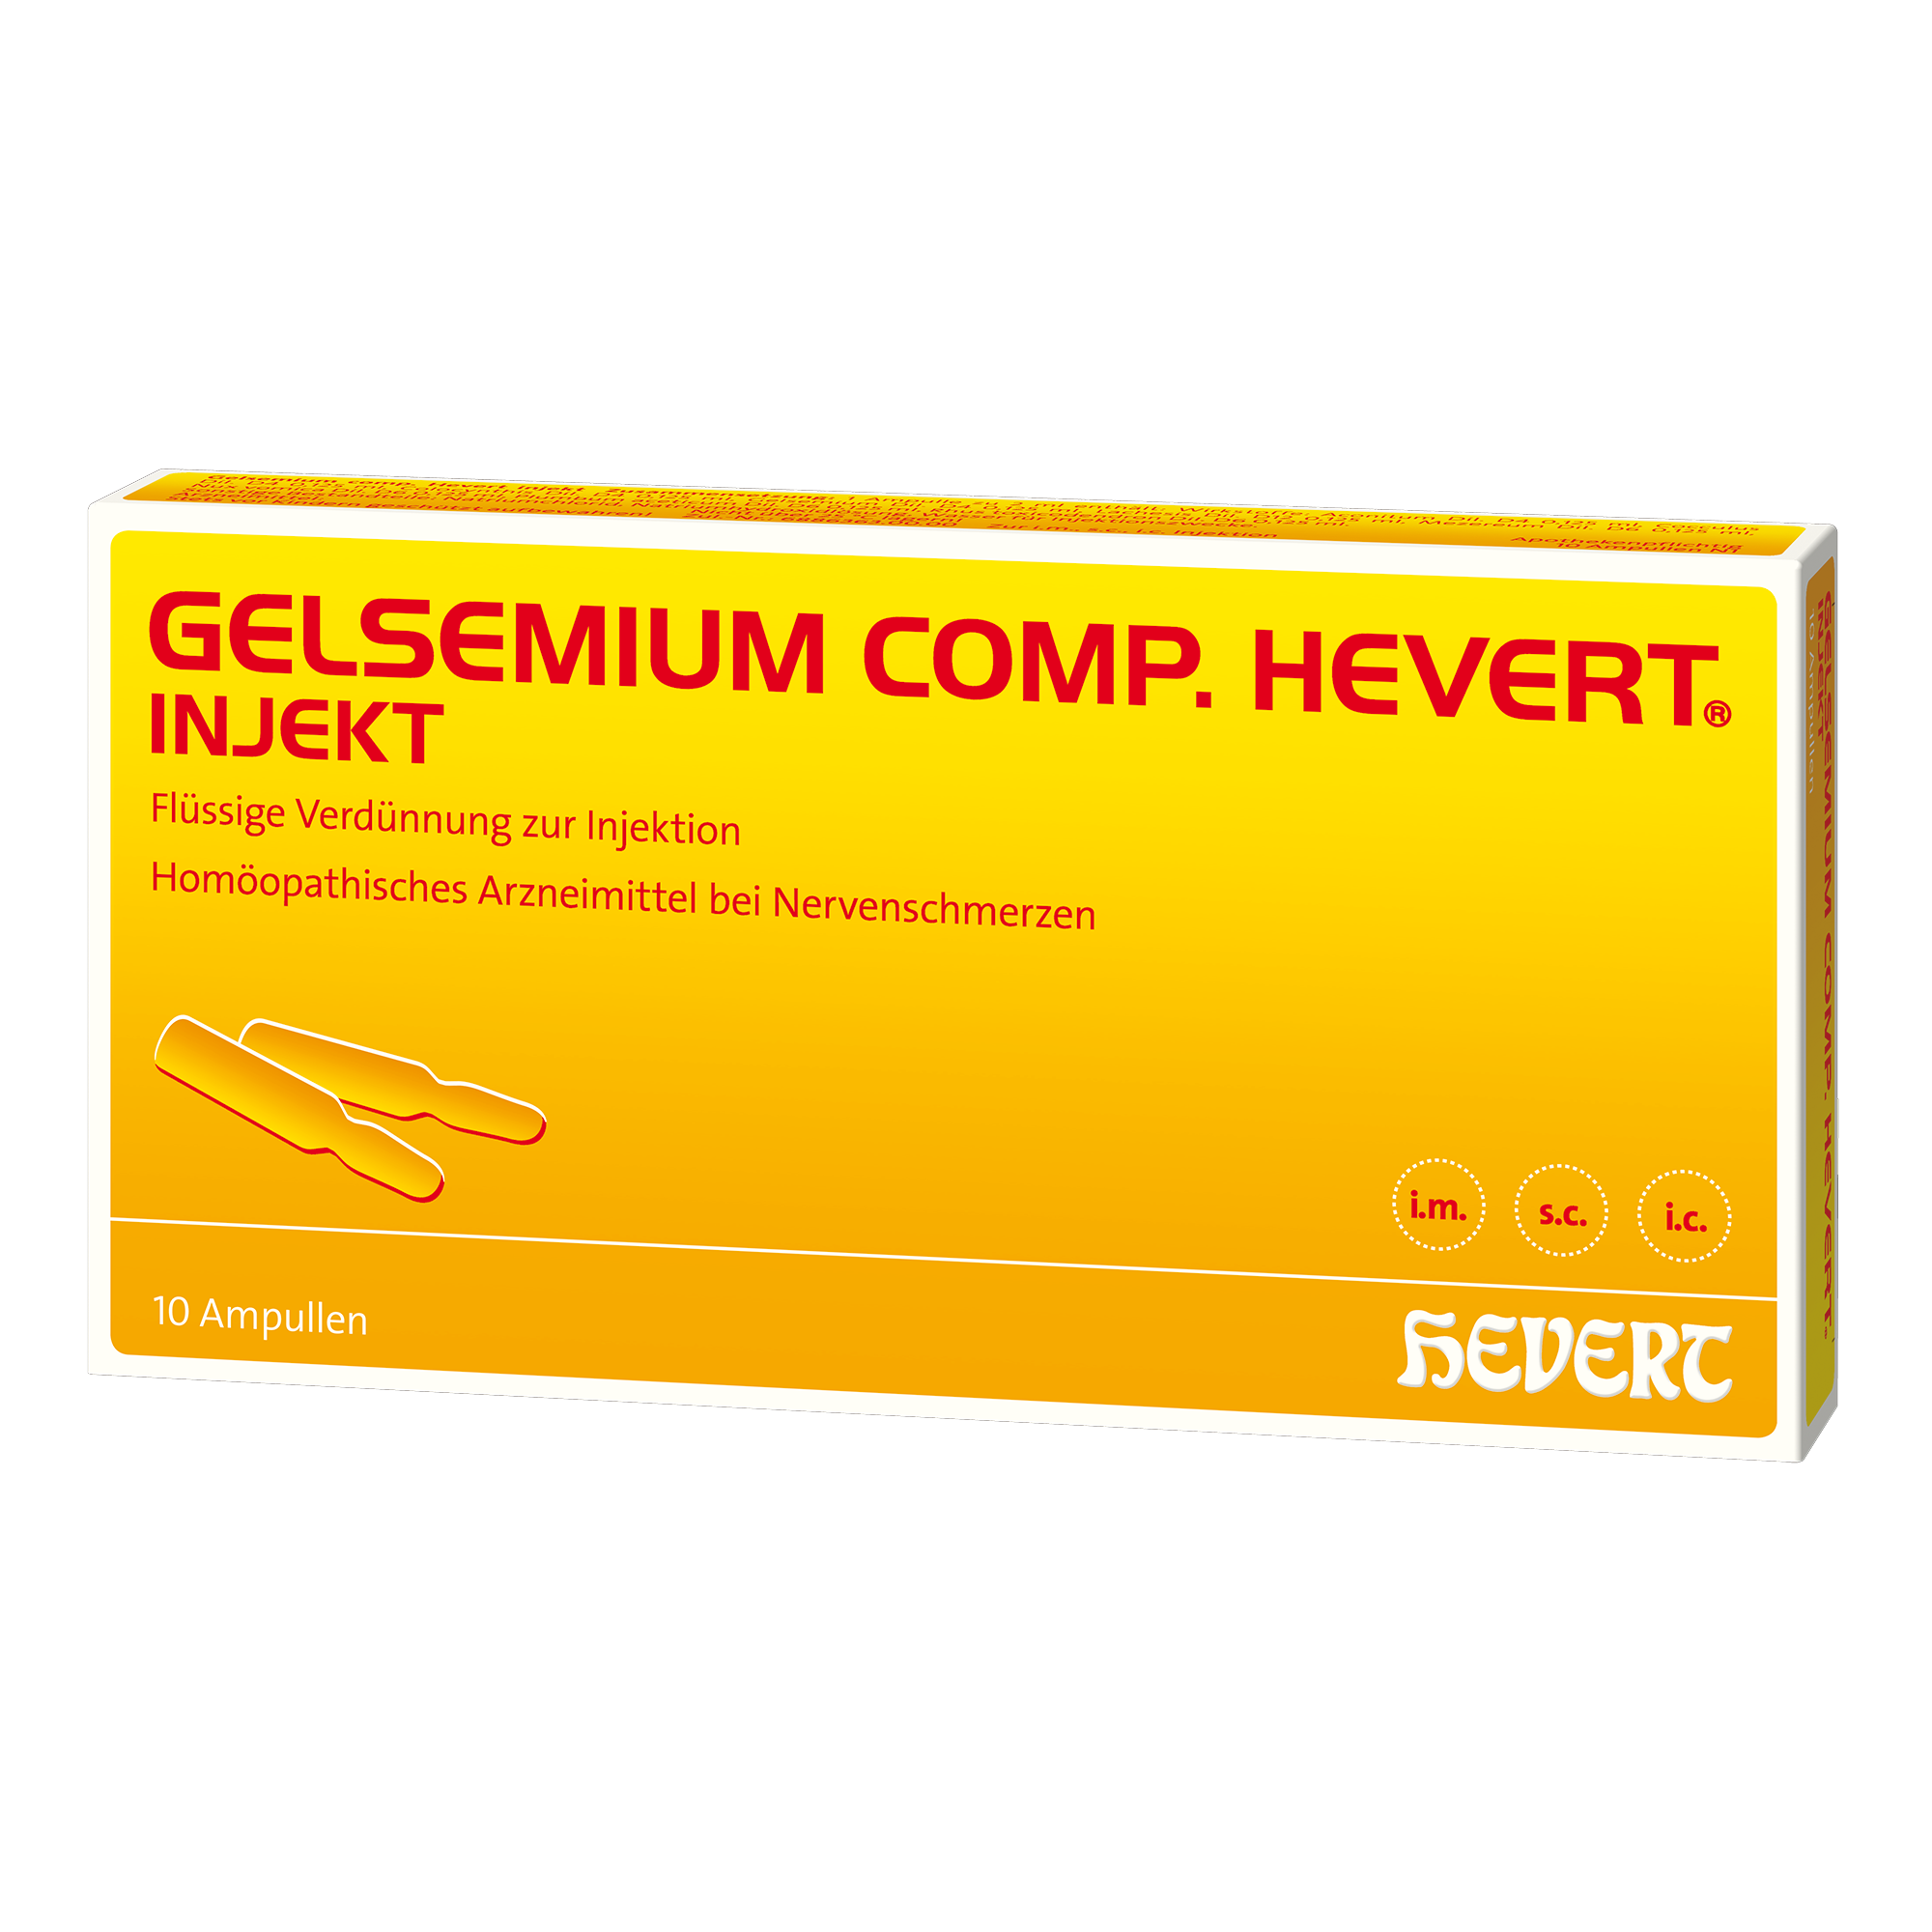 Gelsemium comp. Hevert injekt